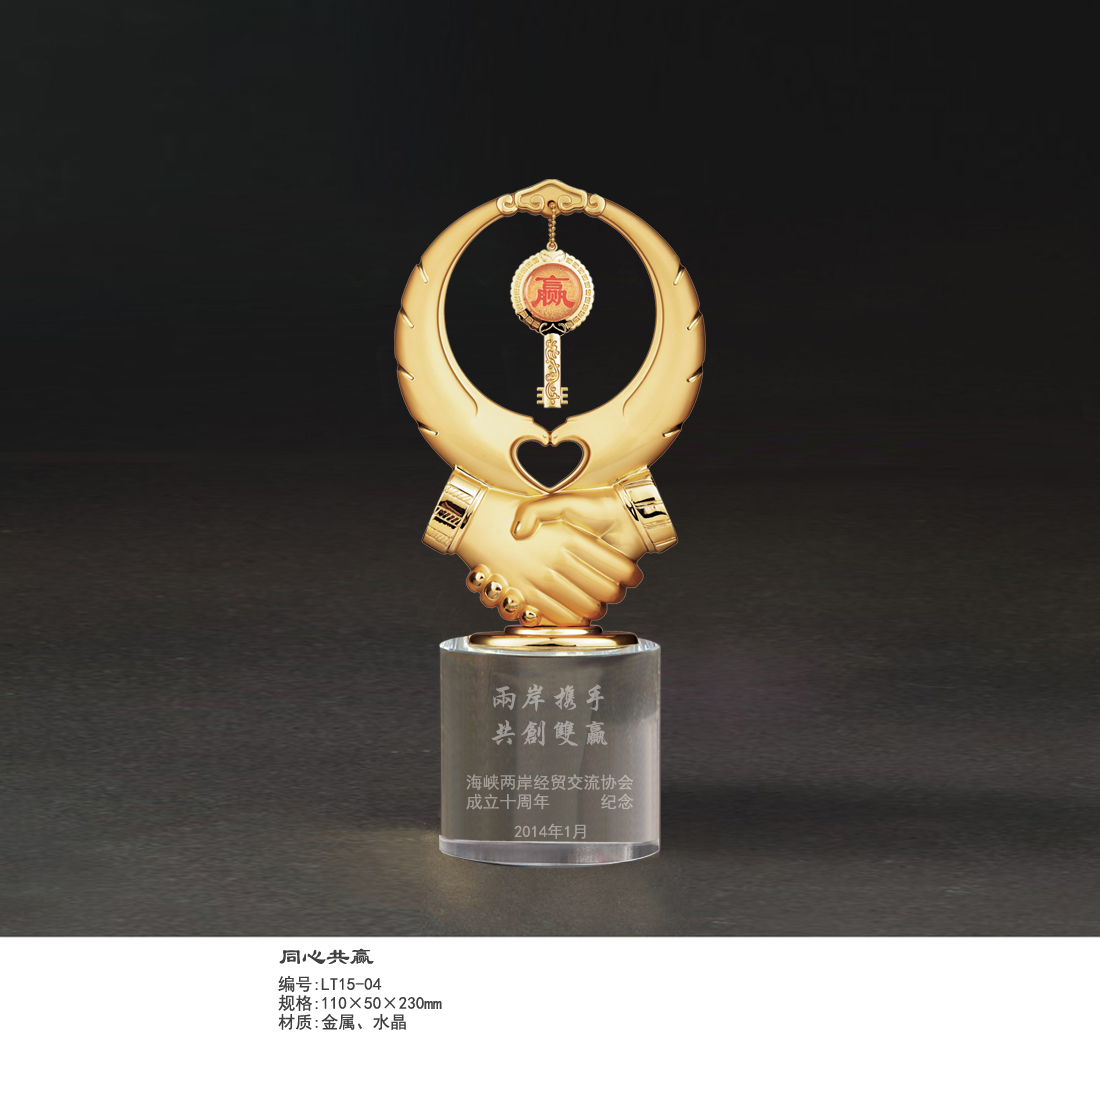 供应水晶合作纪念品,握手奖杯最佳合作奖，广州水晶奖杯公司，广州礼品